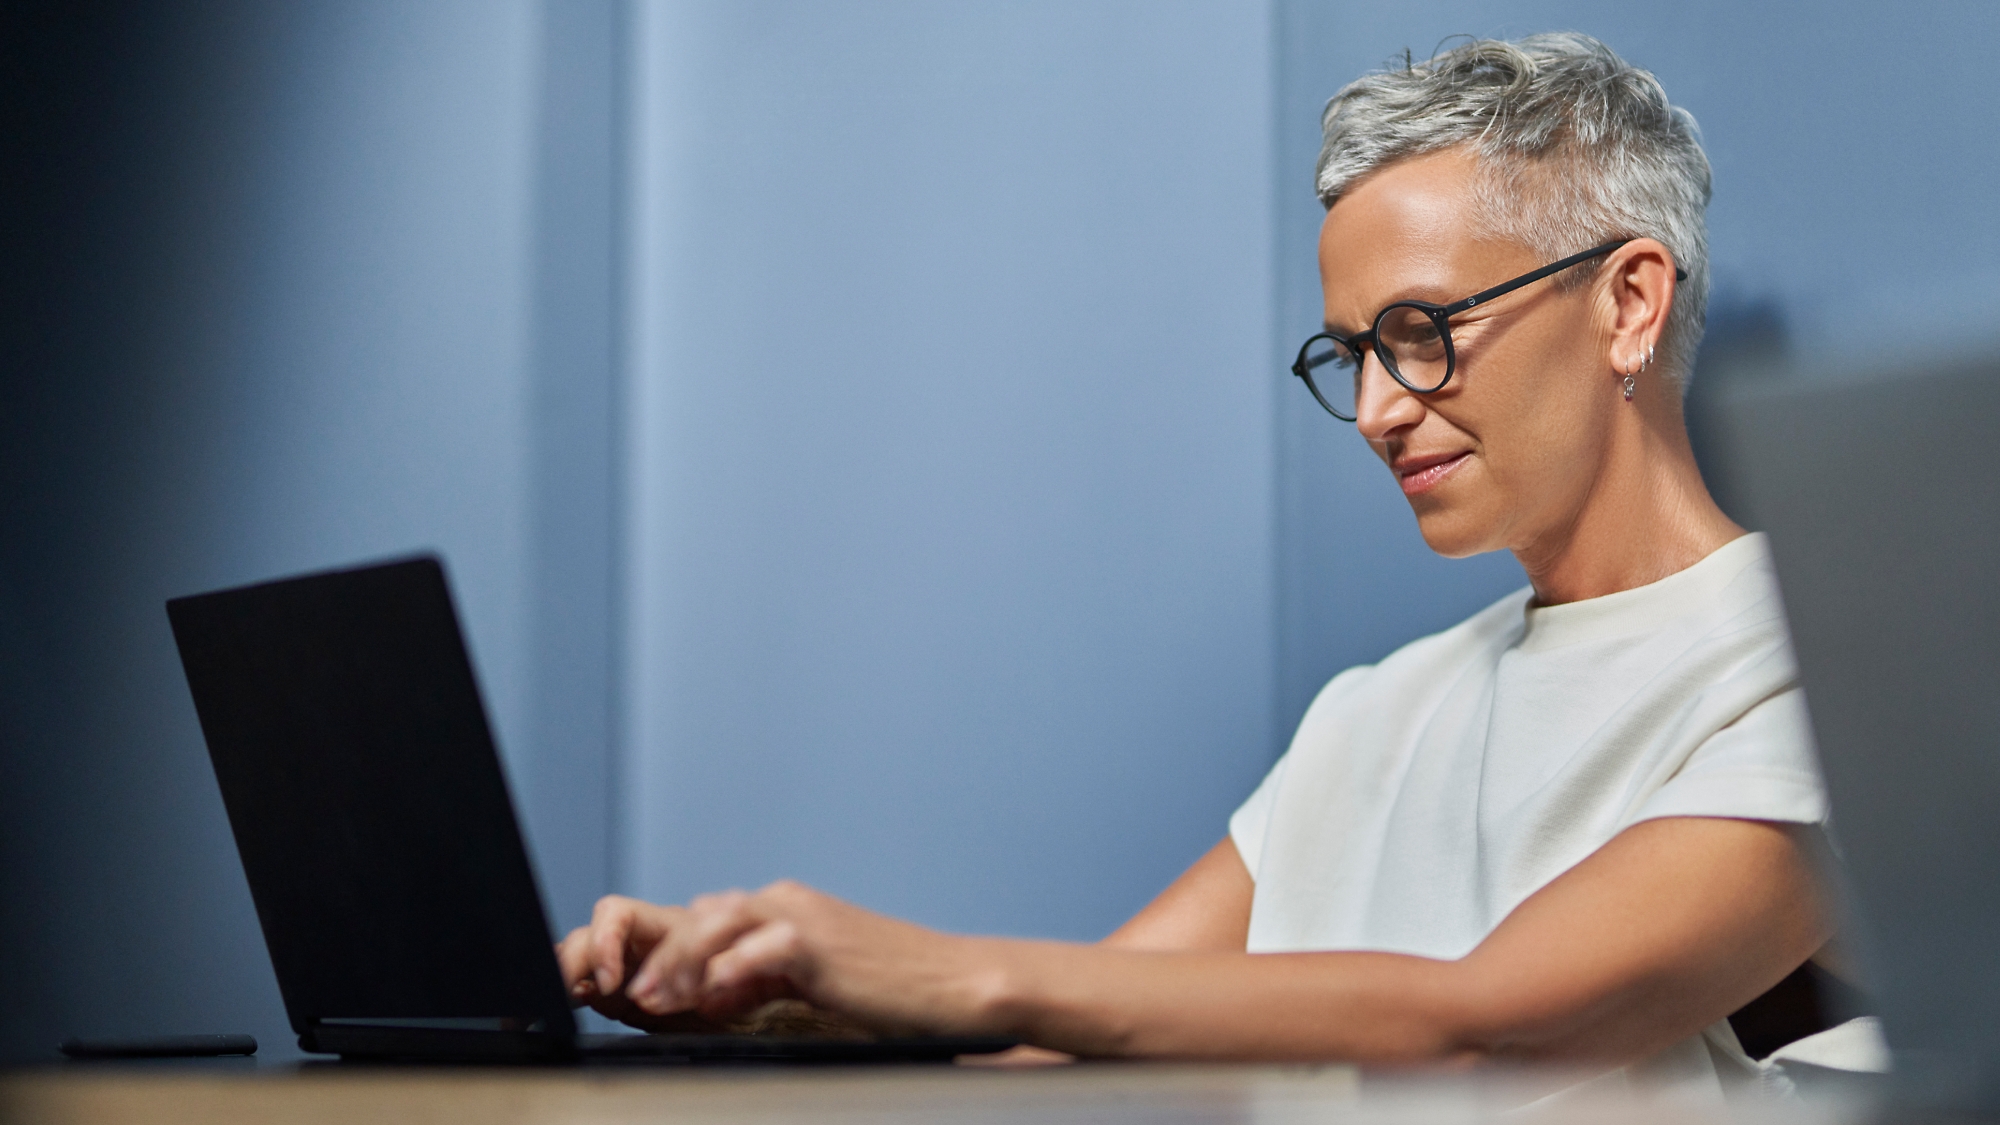 Una mujer madura con pelo gris y corto sonríe y trabaja en un portátil en una oficina moderna.